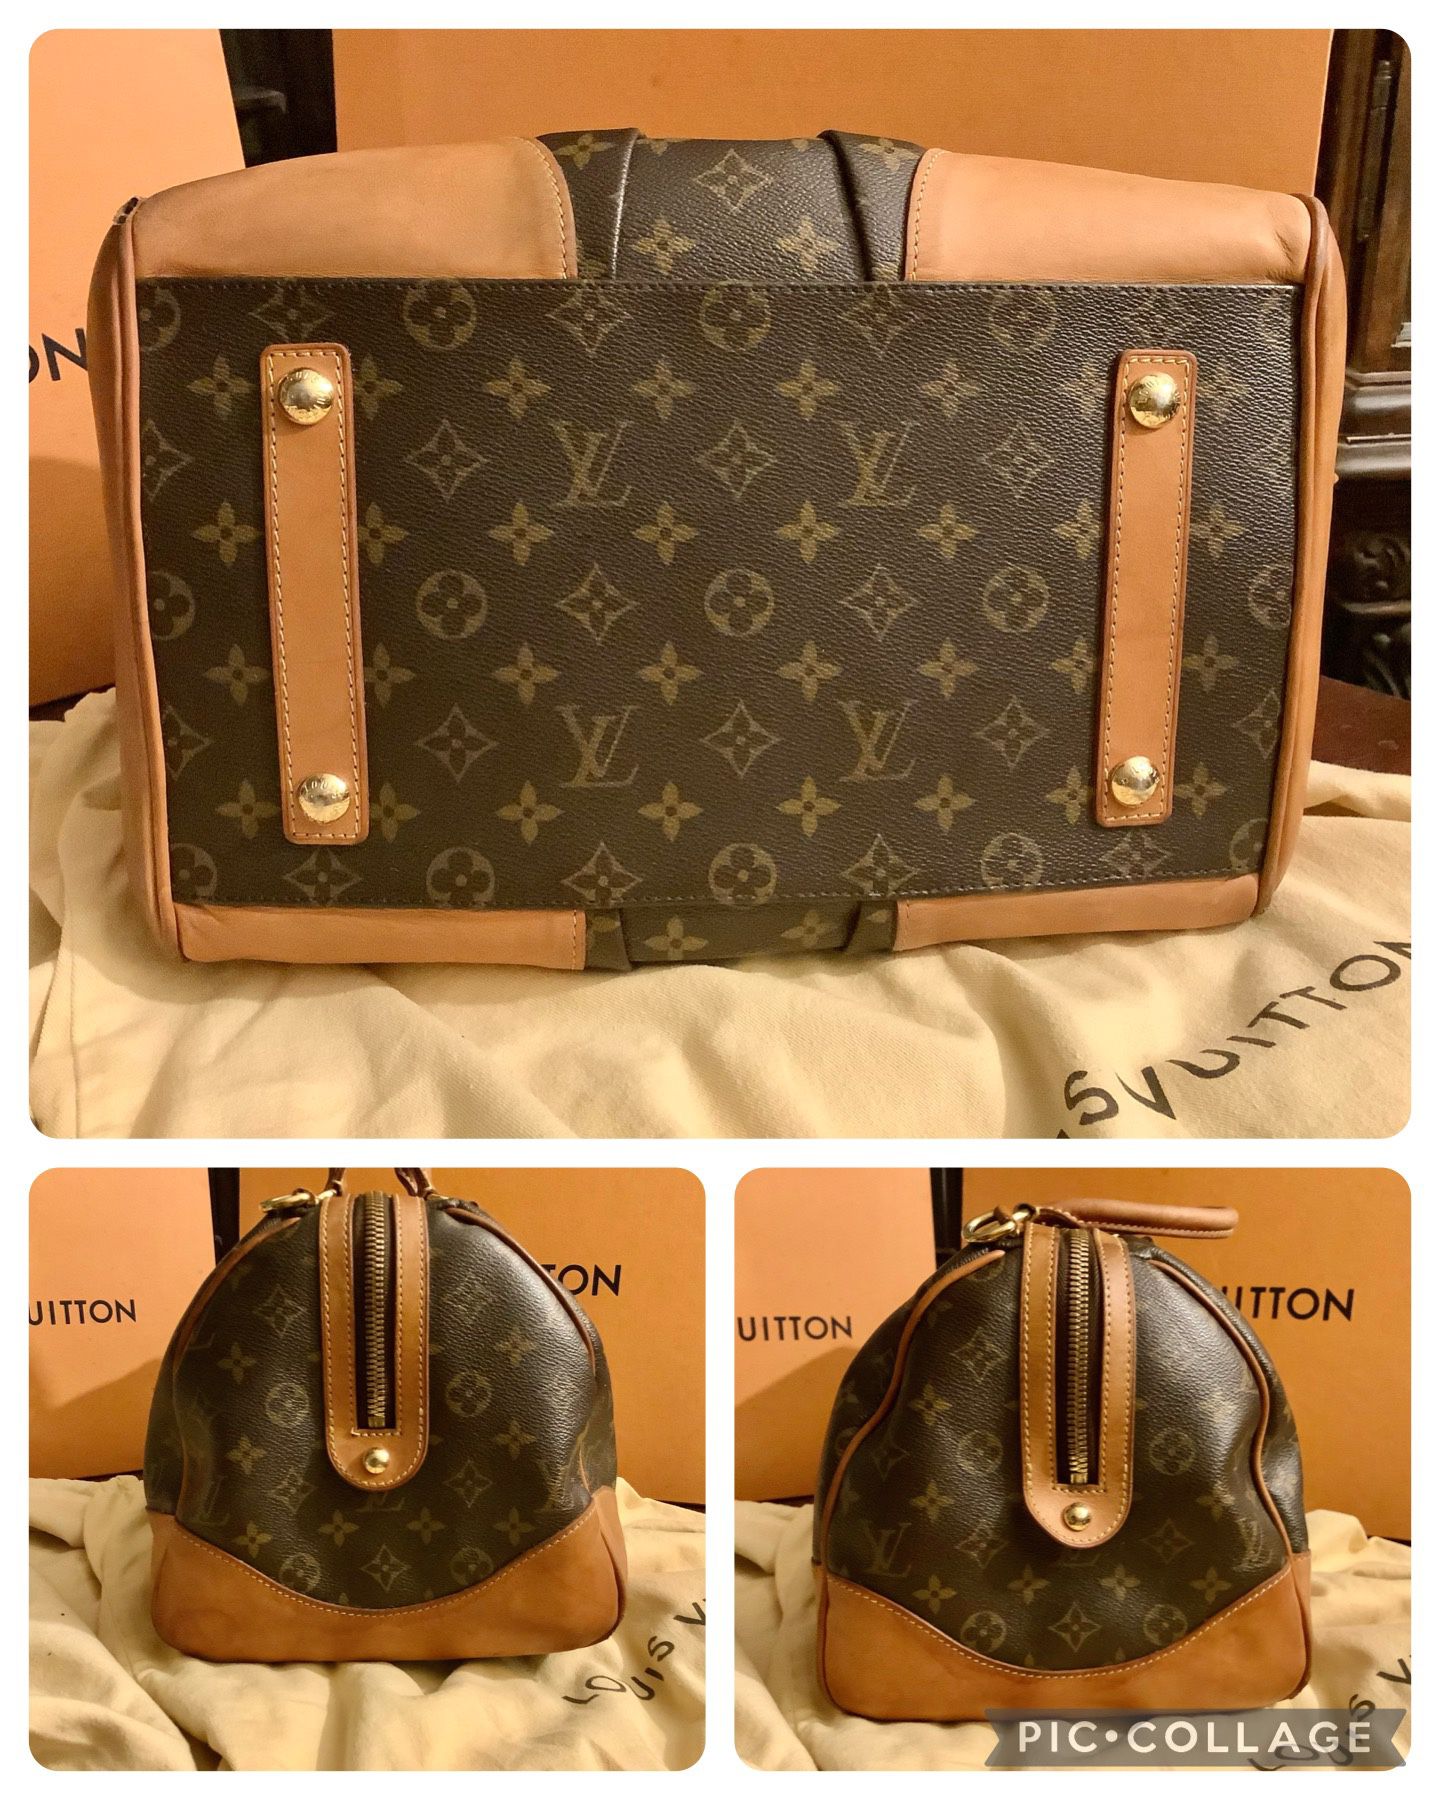 Louis Vuitton Stephen Boston Bag - ShopperBoard